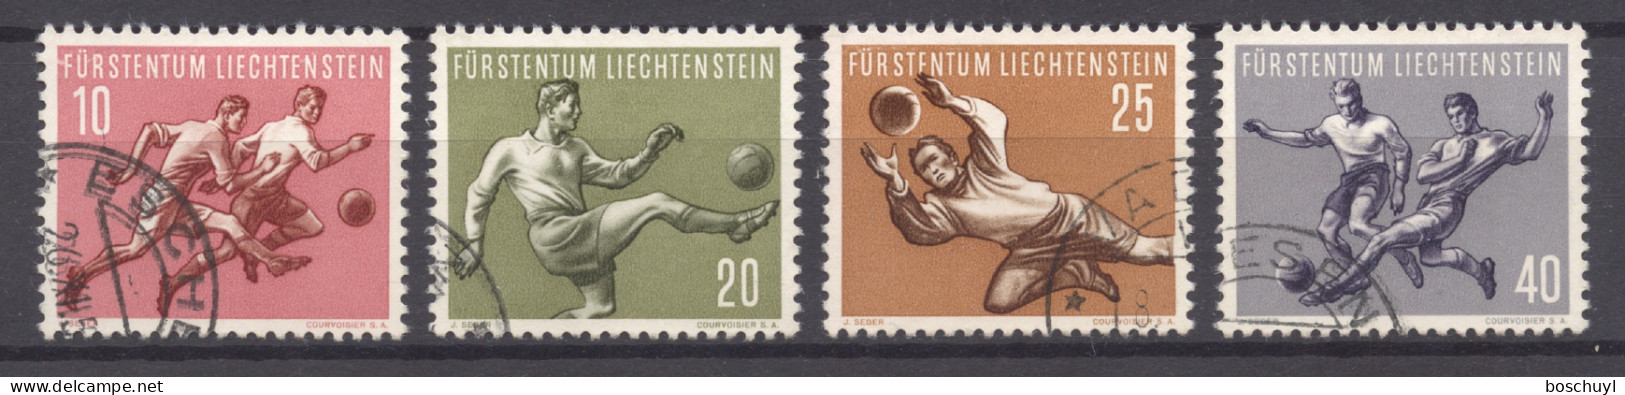 Liechtenstein, 1954, Soccer World Cup Switzerland, Football, Sports, Used, Michel 322-325 - Usados